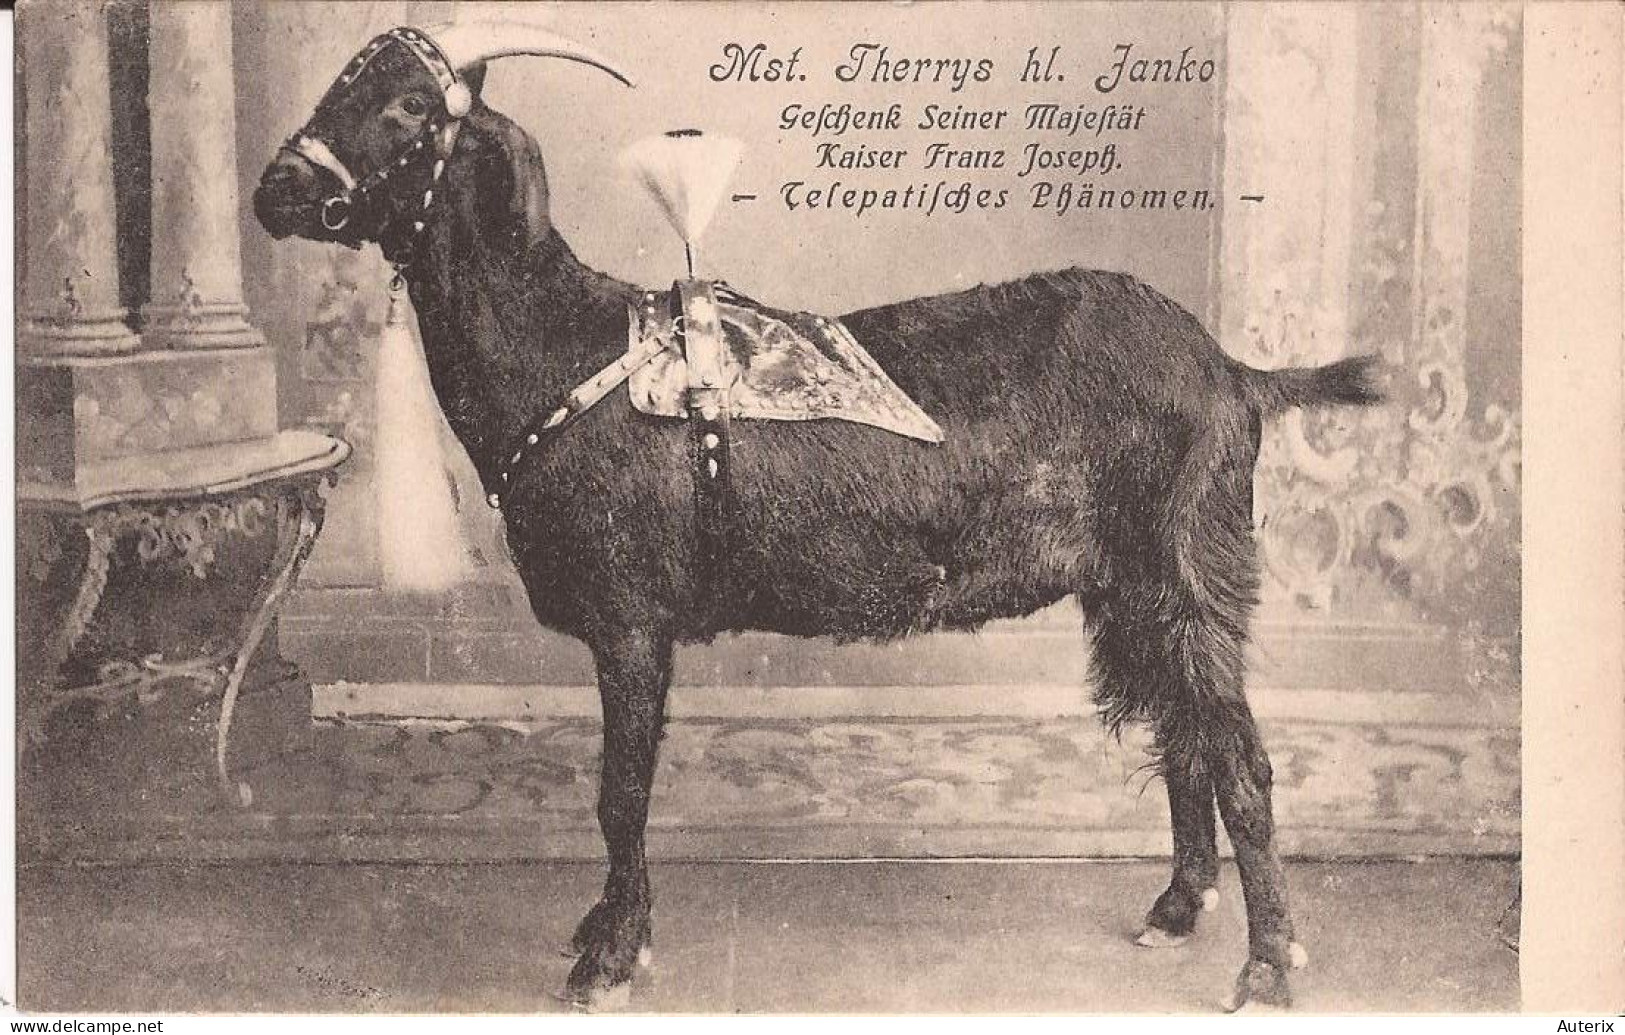 Allemagne - Mst. Therrys Hl. Fanko - Gefchenk Seiner Majeftät Kaiser Franz Joseph - Telepatifches Phänomen Goat - Astrologie